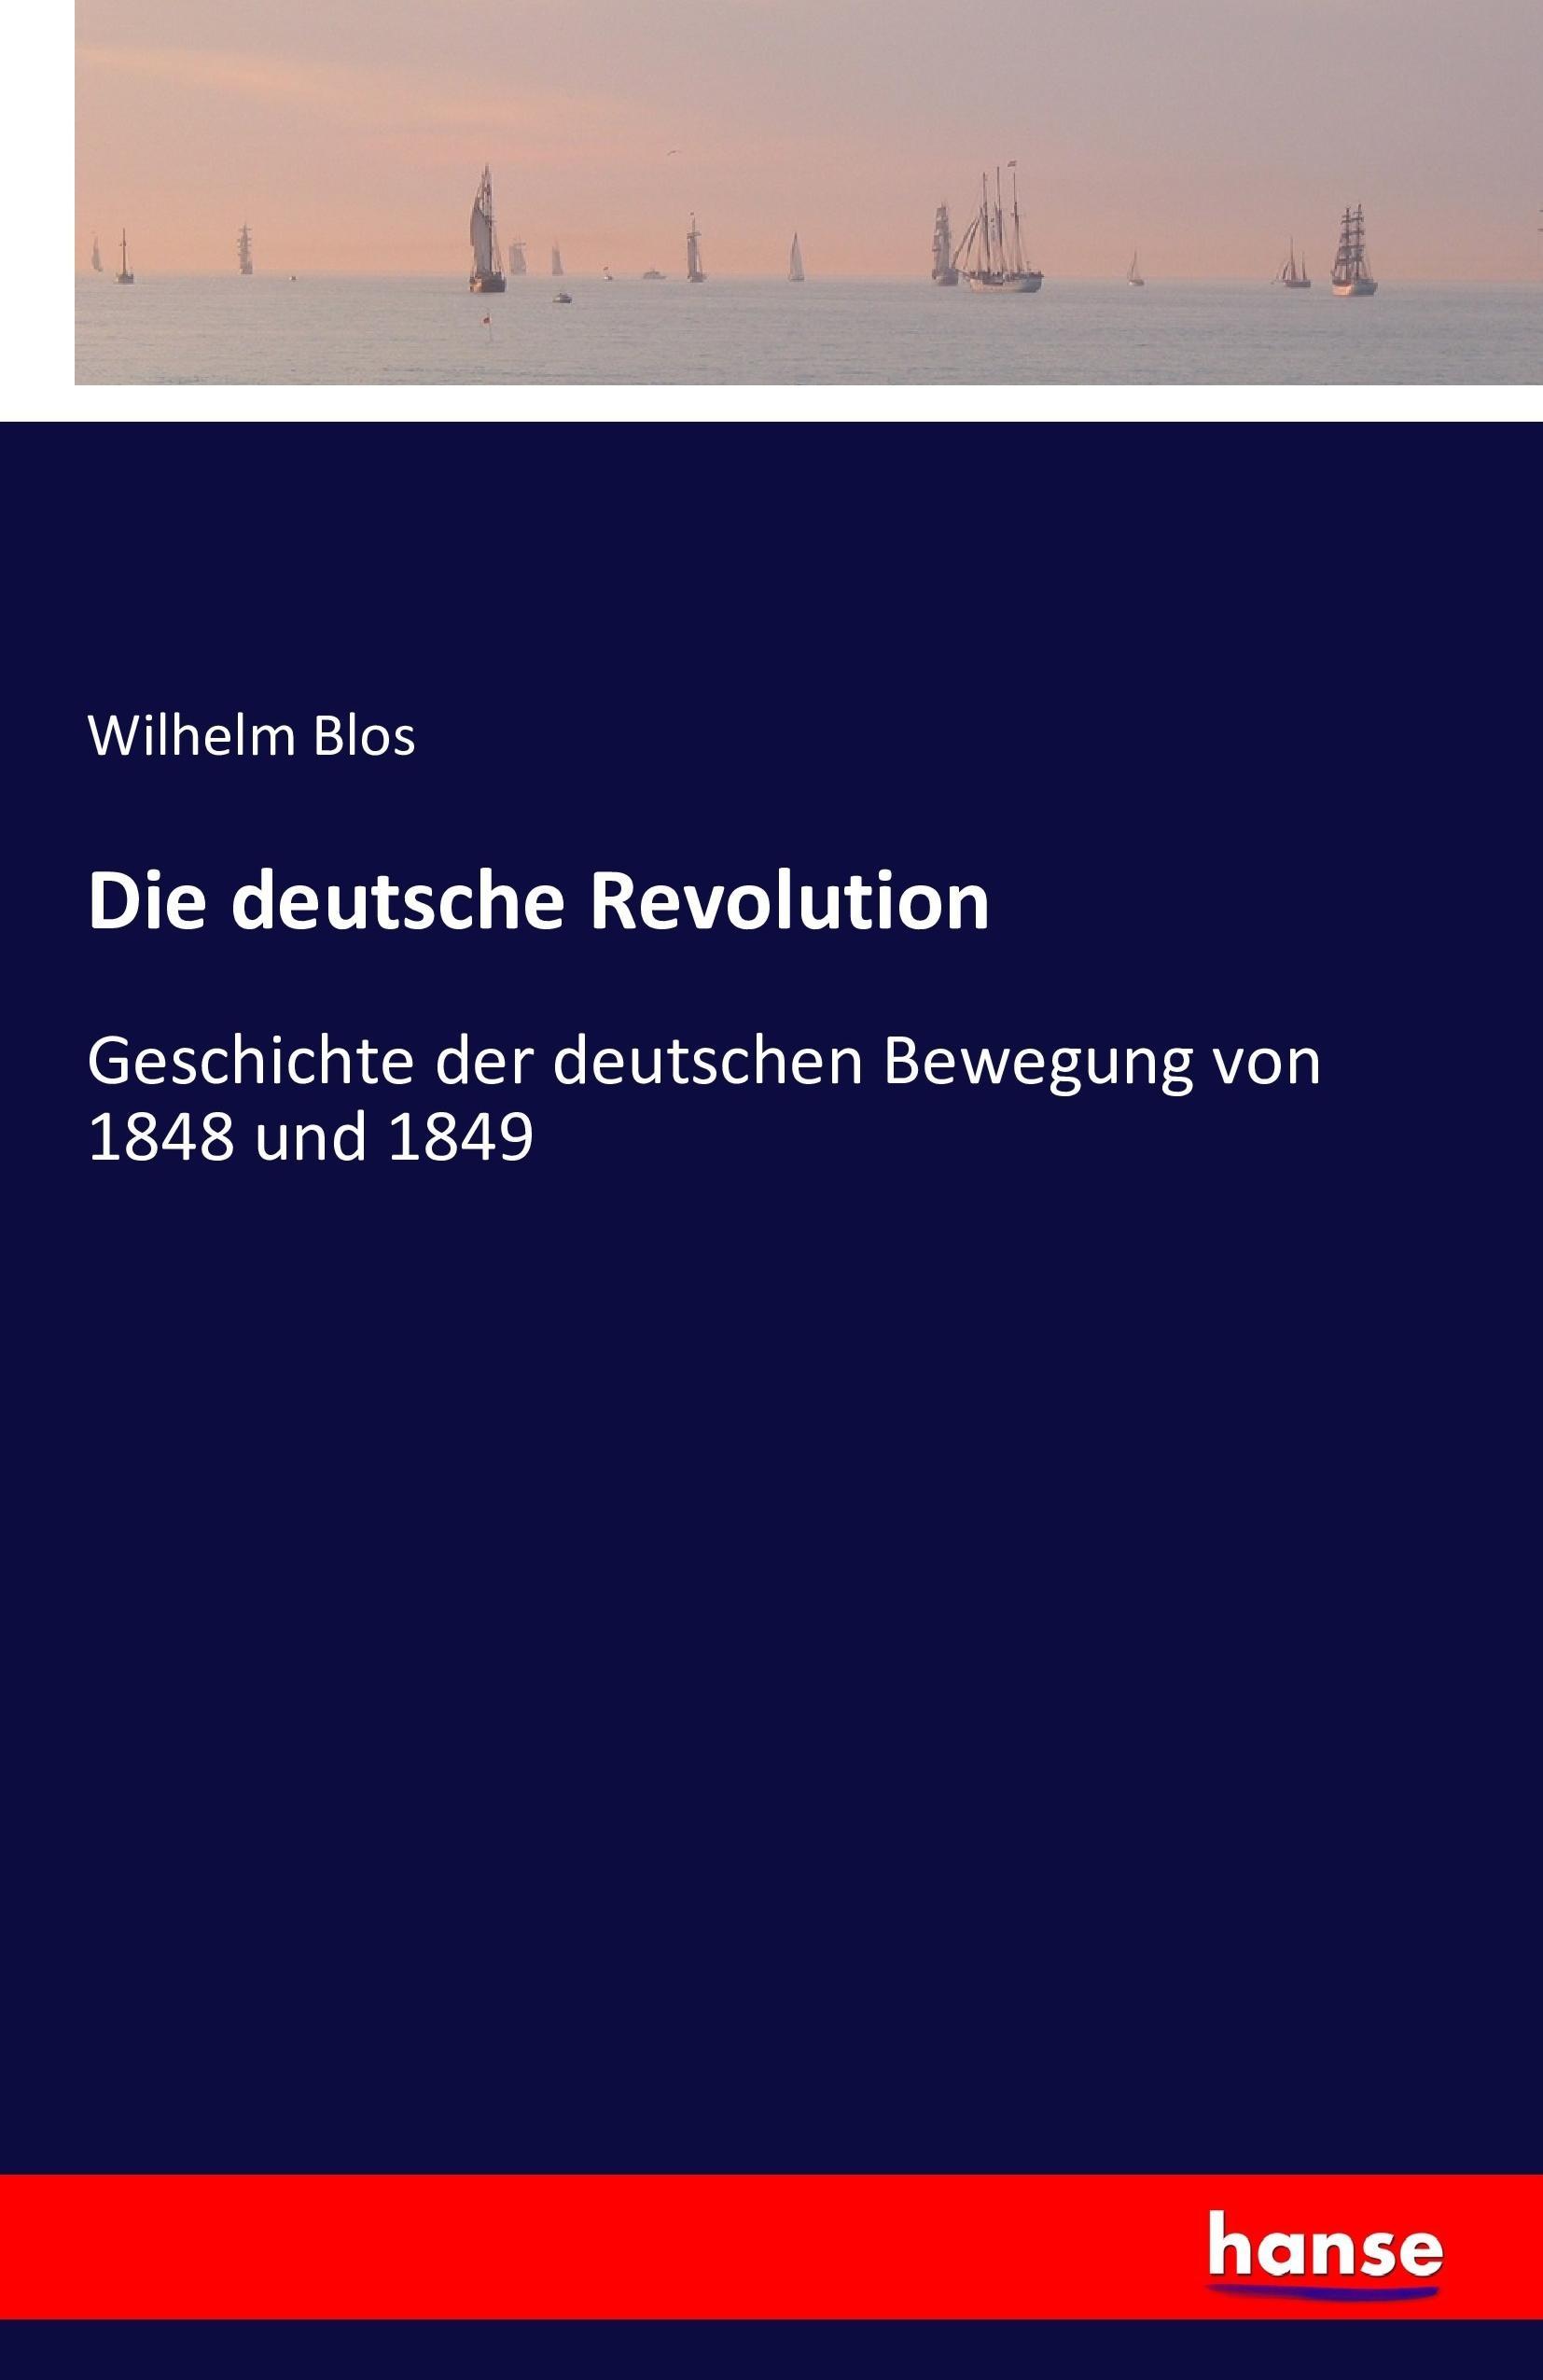 Die deutsche Revolution - Blos, Wilhelm